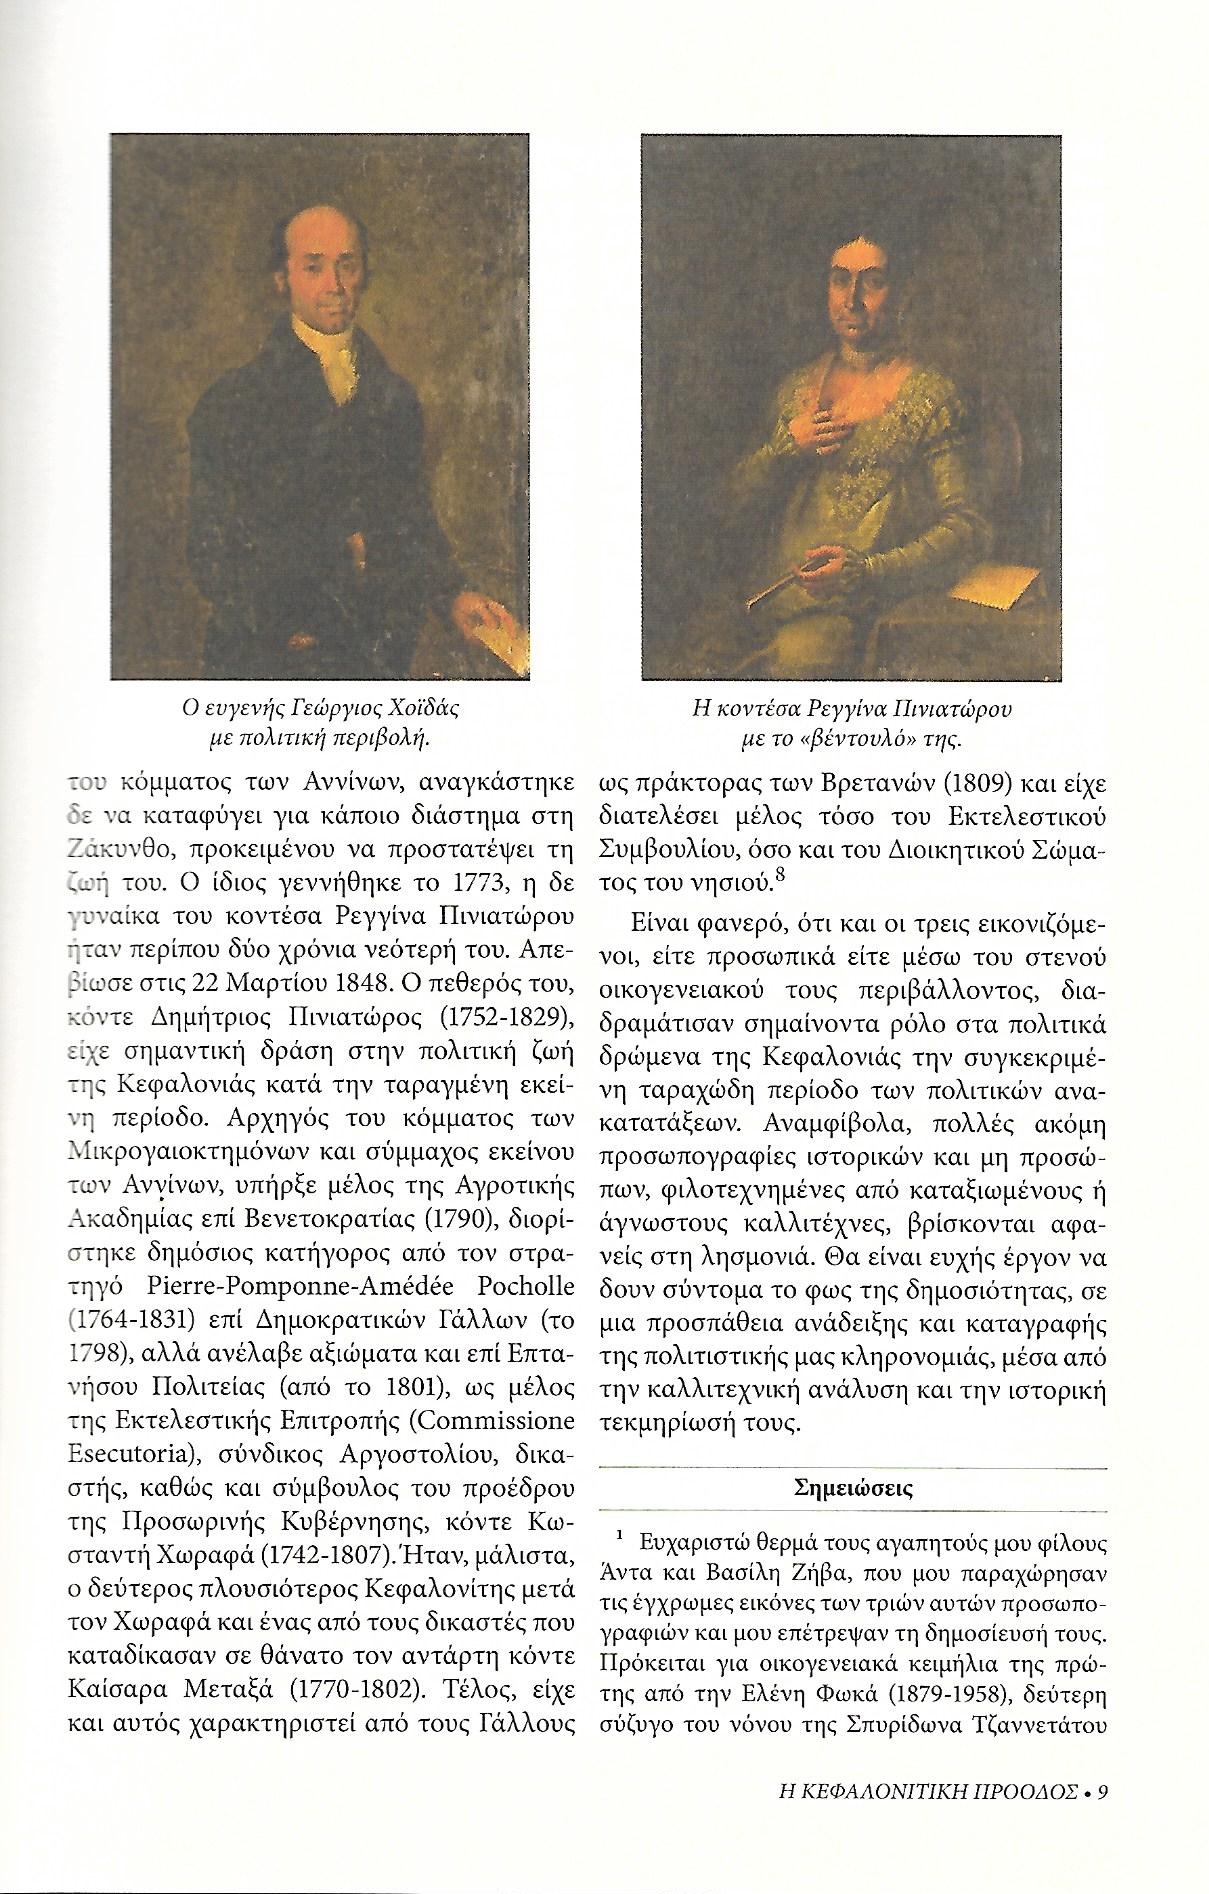 Τρεις ιστορικές προσωπογραφίες, Κεφαλονίτικη Πρόοδος, Β-27, σελ. 9